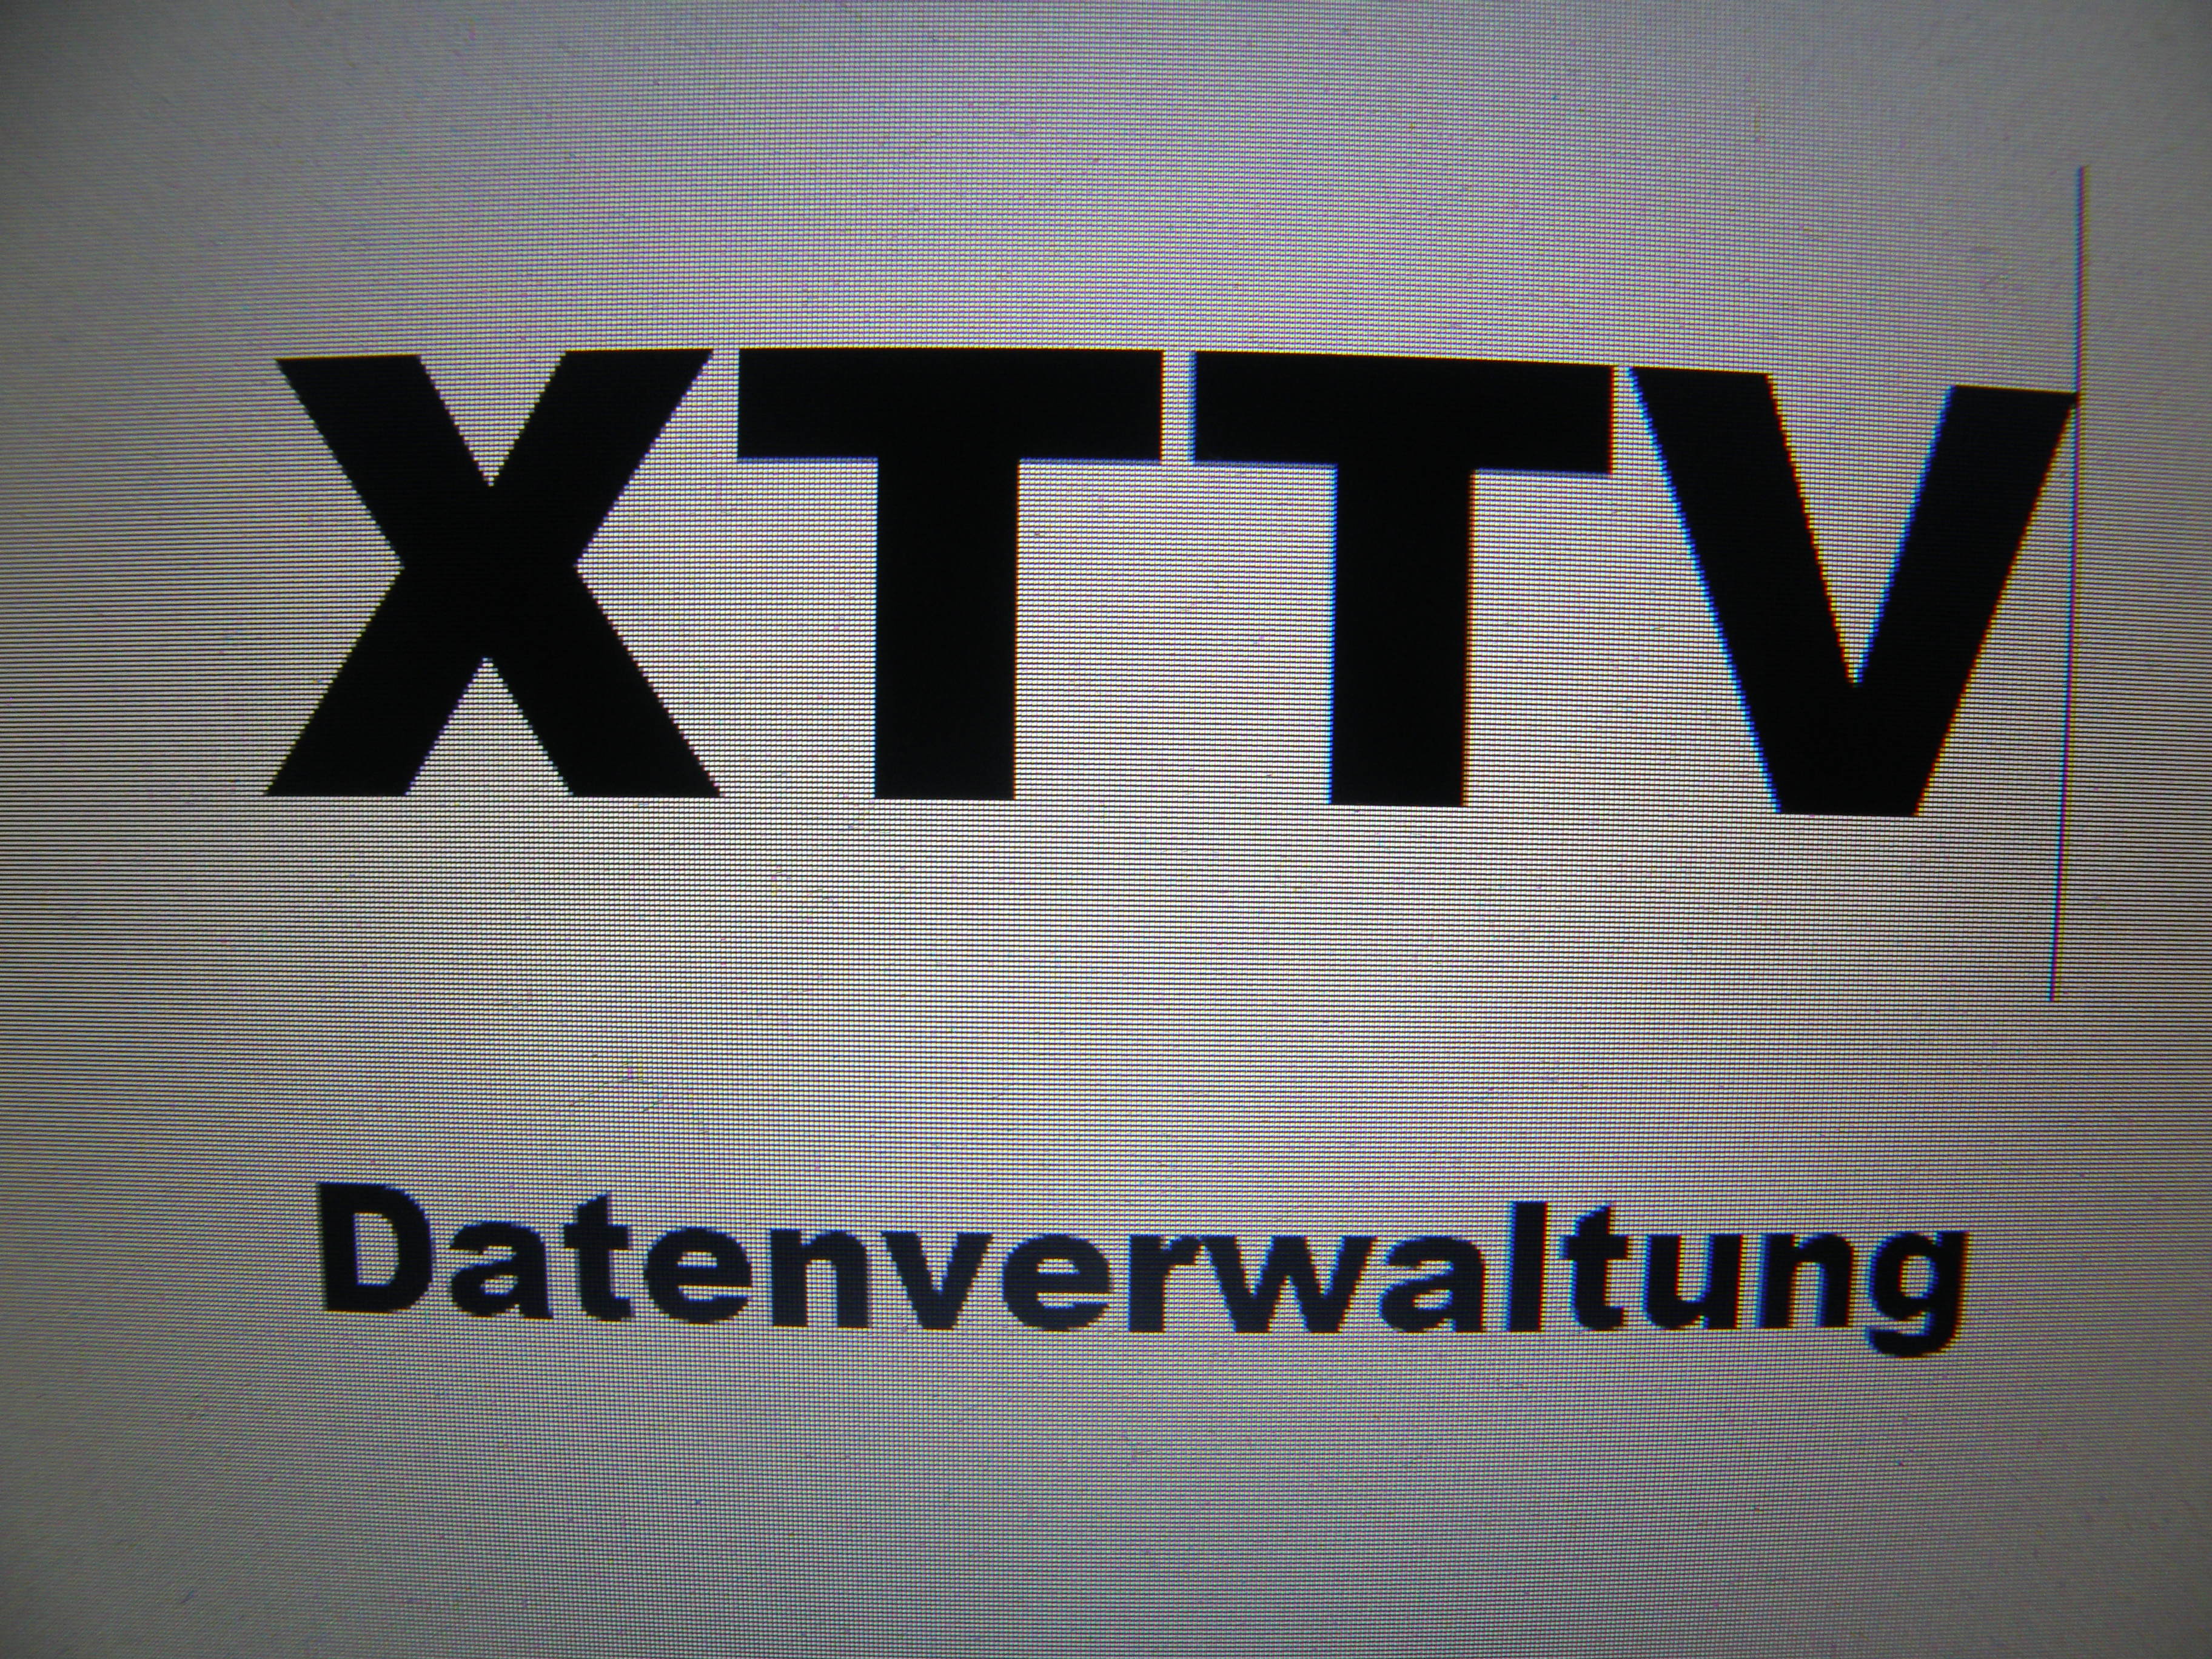 xttv-datenverwaltung